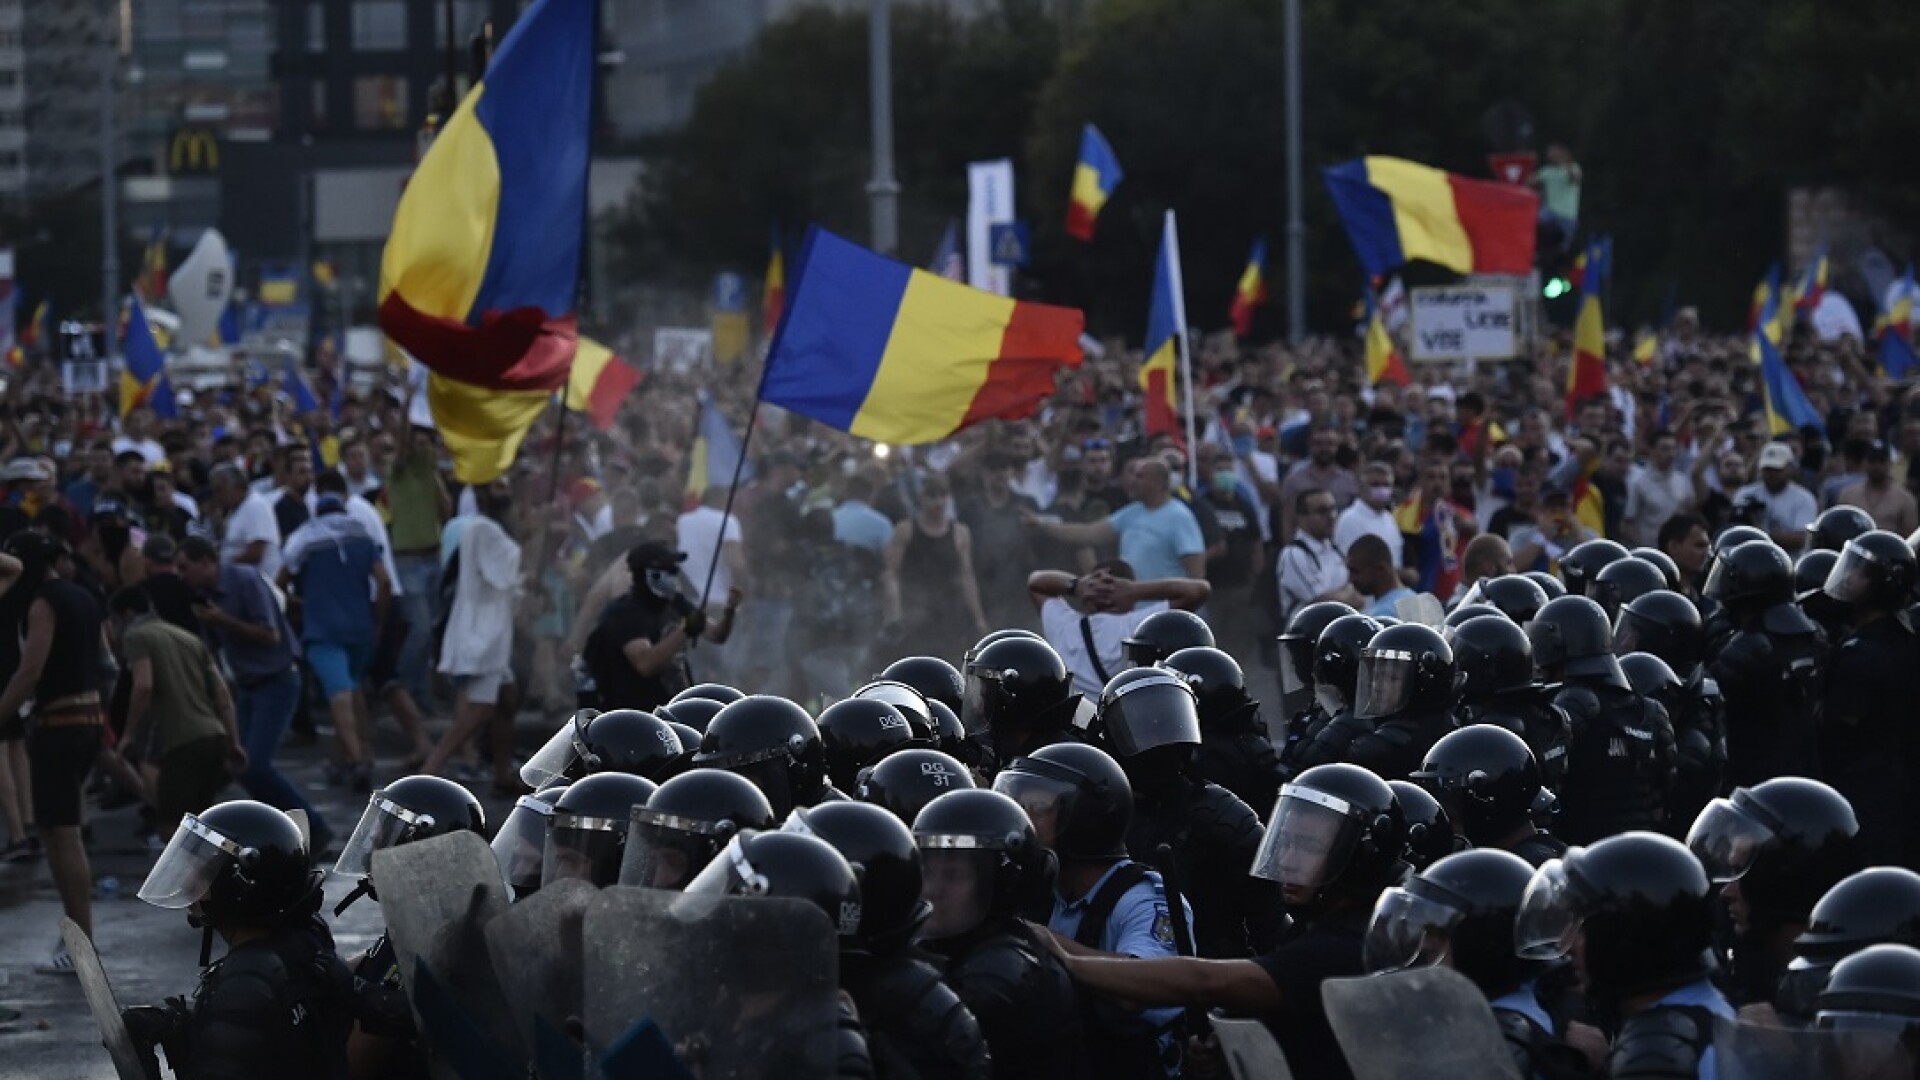 Incidente intre jandarmi si participanti la protestul din Piata Victoriei din Capitala